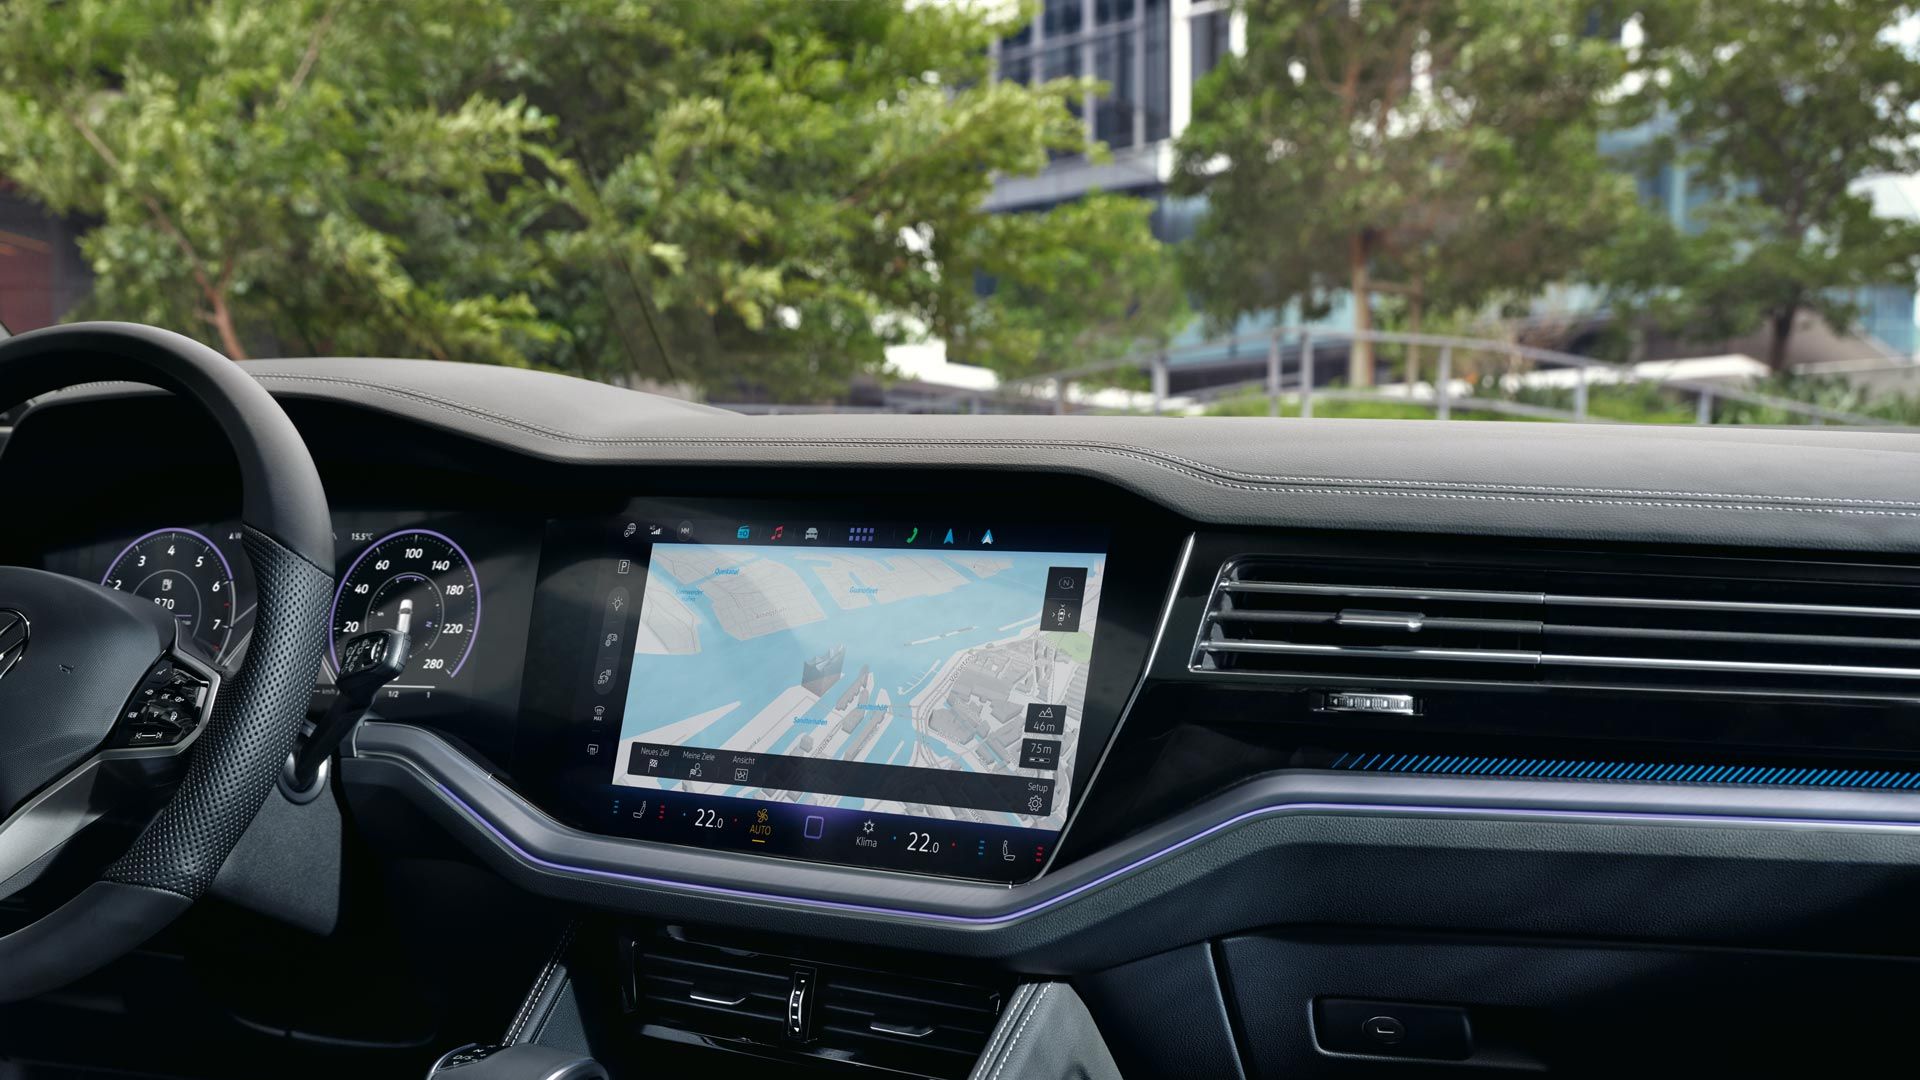 Blick auf das Navigationssystem des VW Touareg R-Line